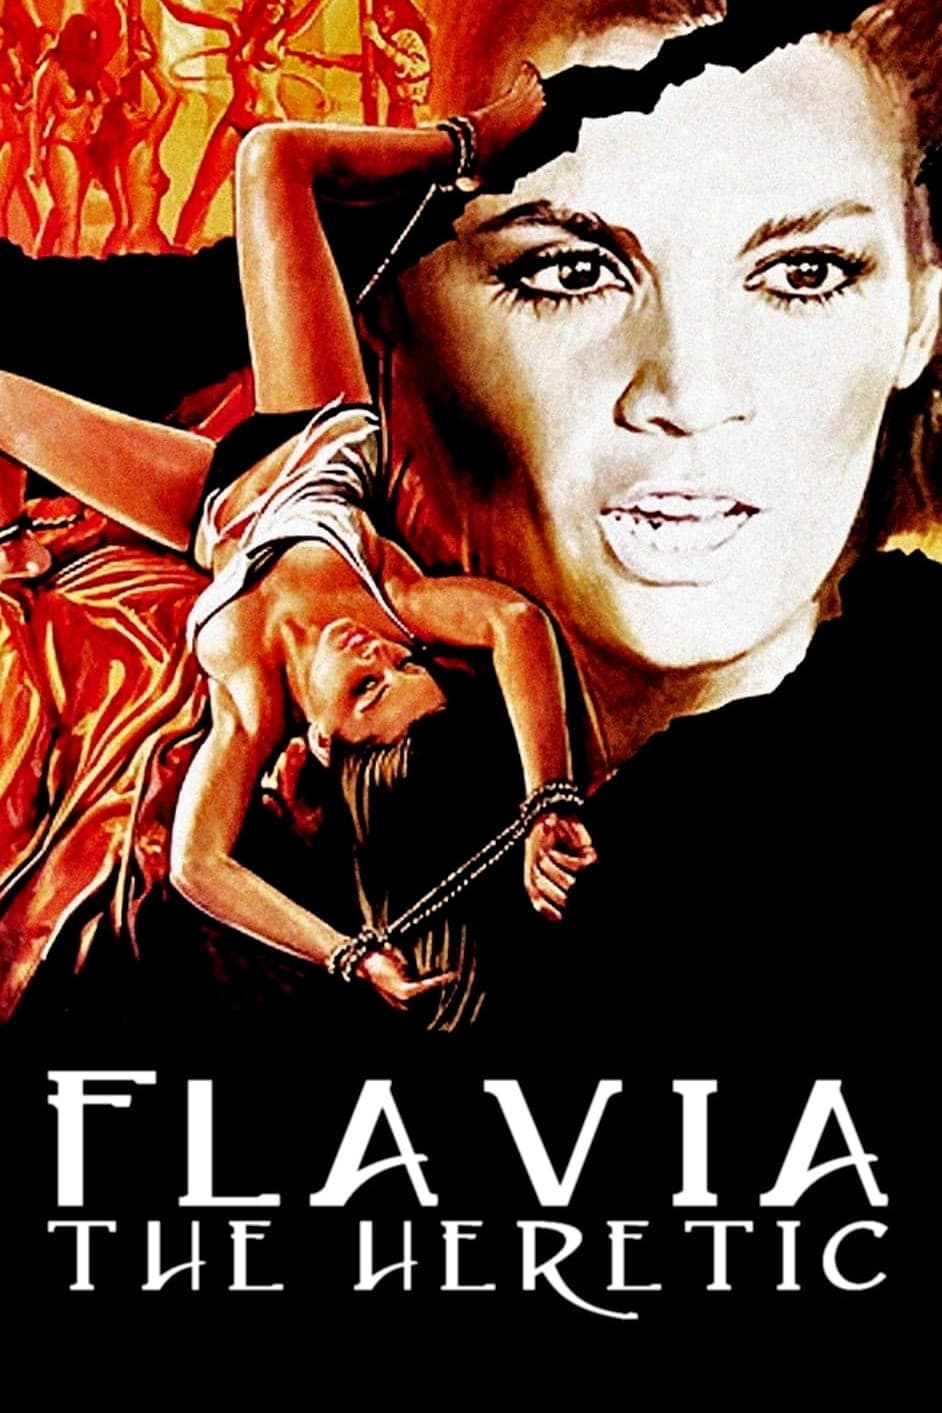 Flavia la défroquée (1974)